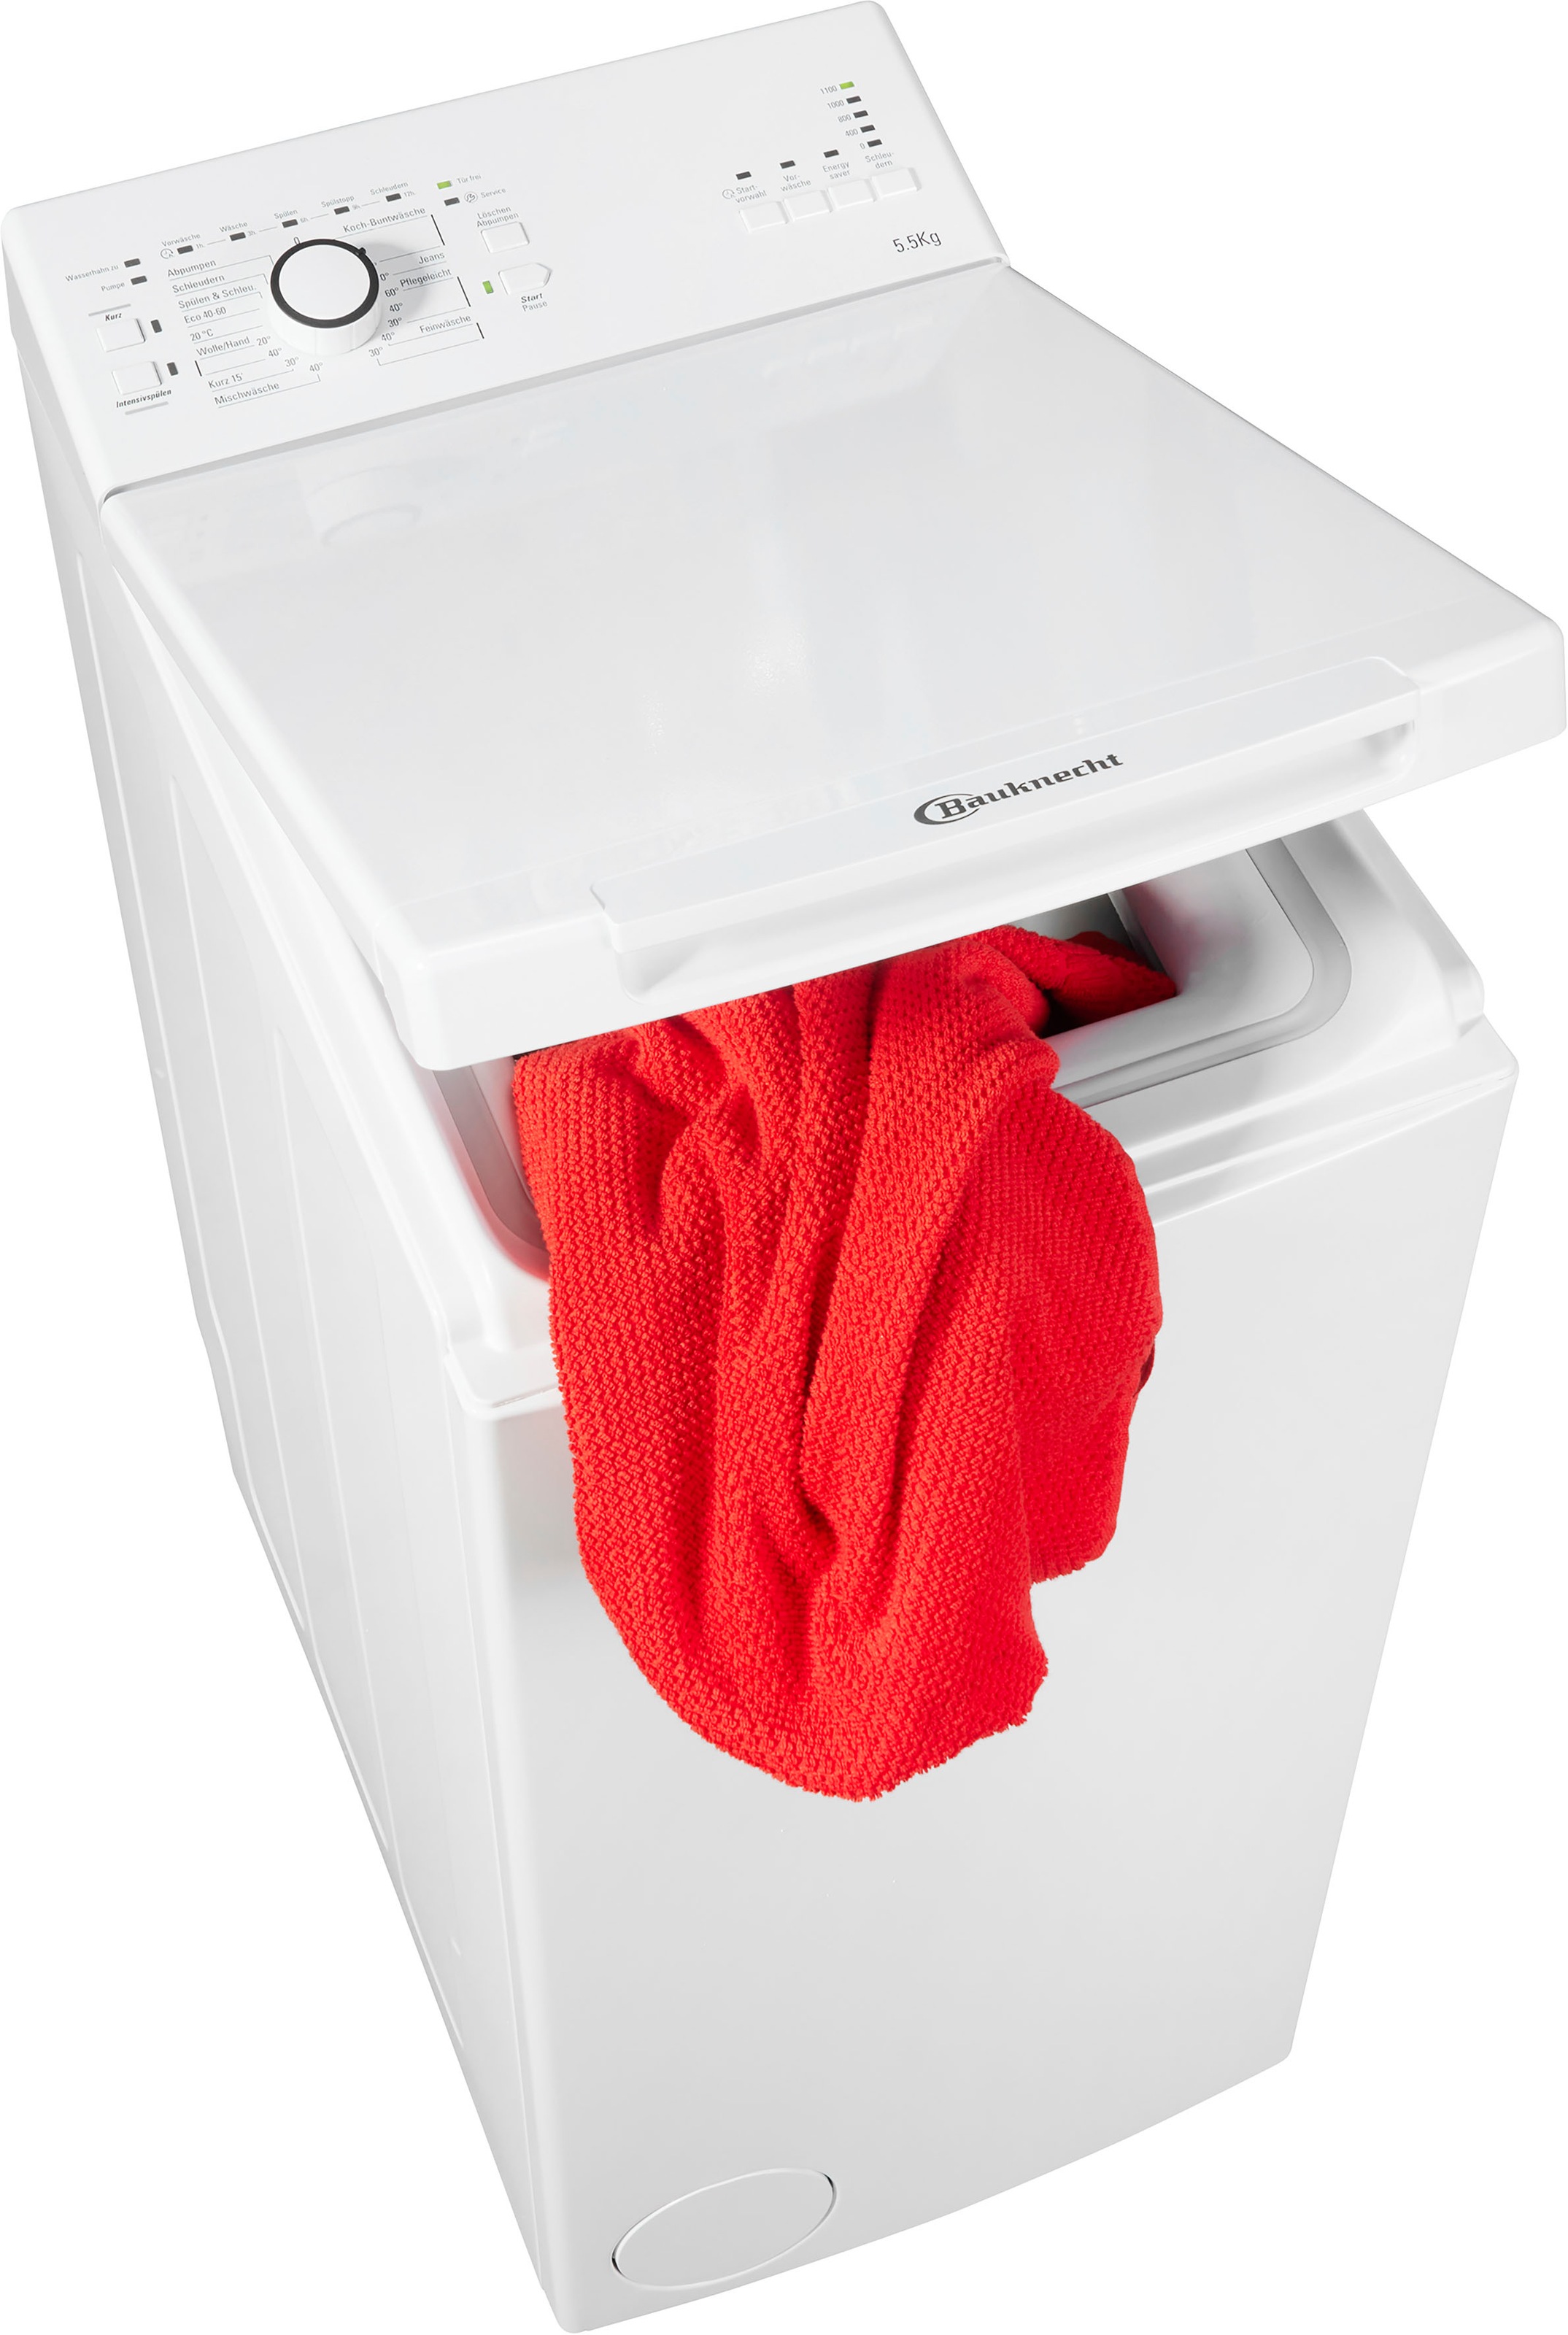 BAUKNECHT Waschmaschine Toplader »WAT Prime Prime 55 kg, WAT U/min bei L3«, online L3, 5,5 1100 55